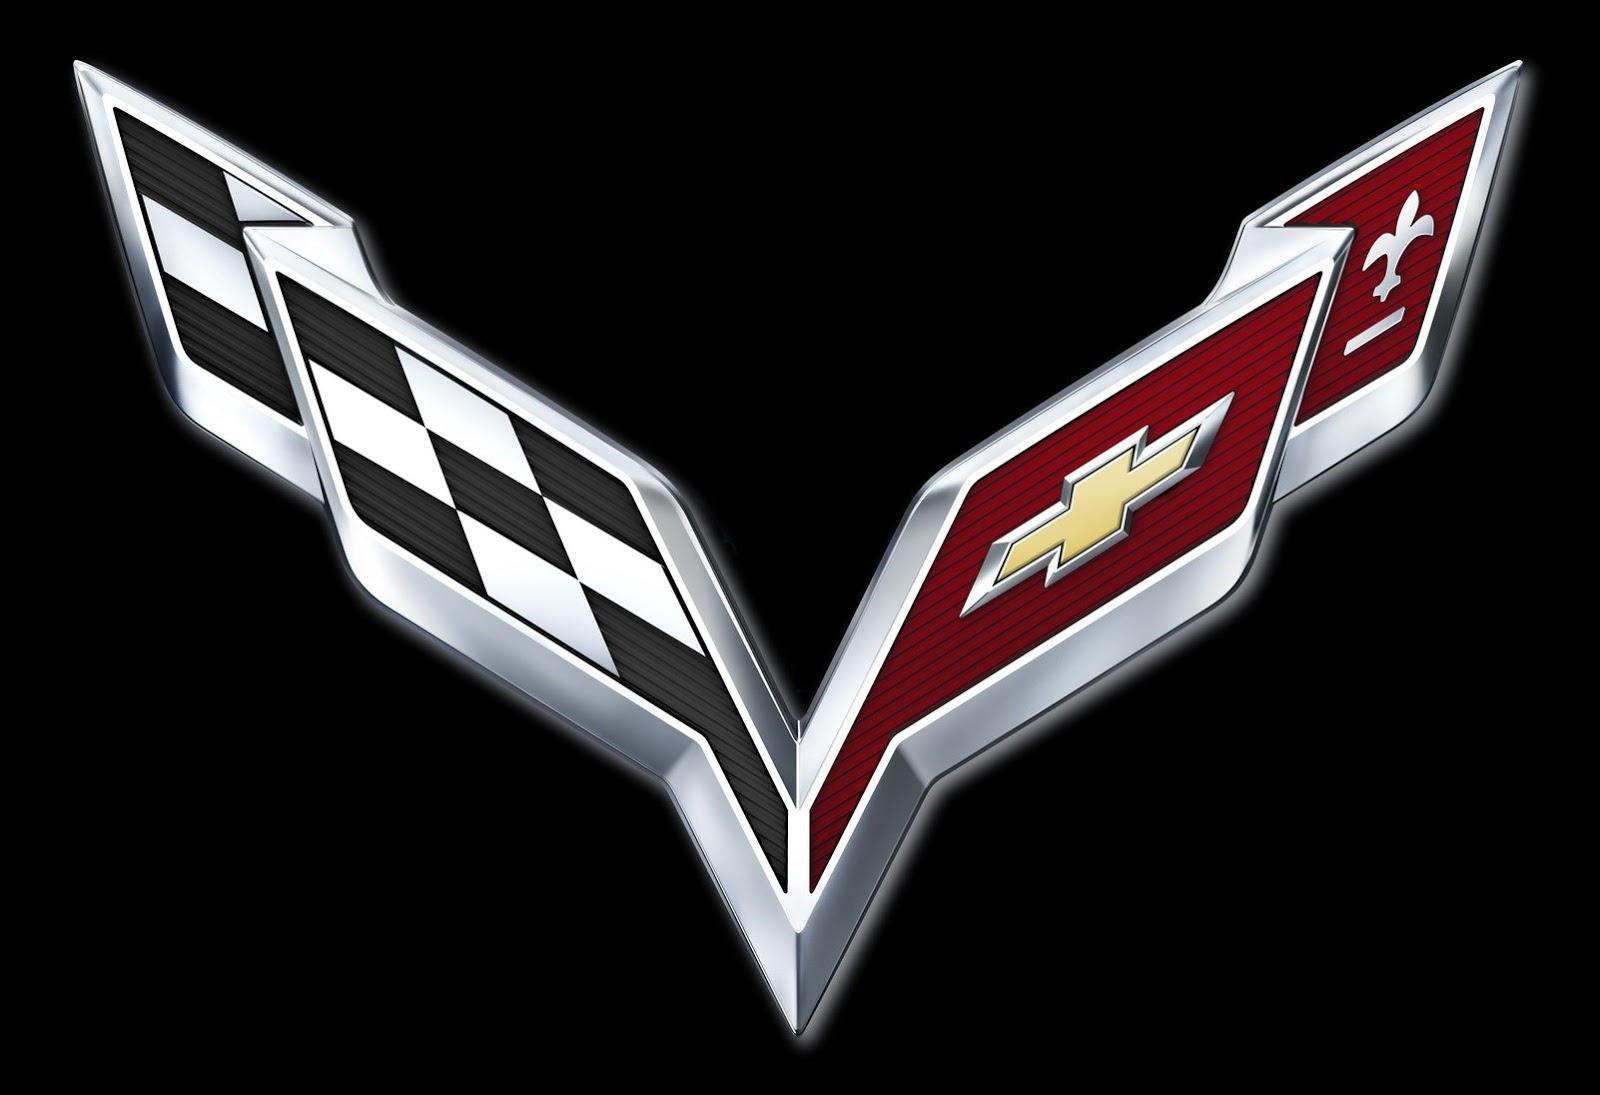 C7 Corvette Logo - GM Reveals 2014 Corvette Logo, Confirms C7 Debut Date - Corvette Online